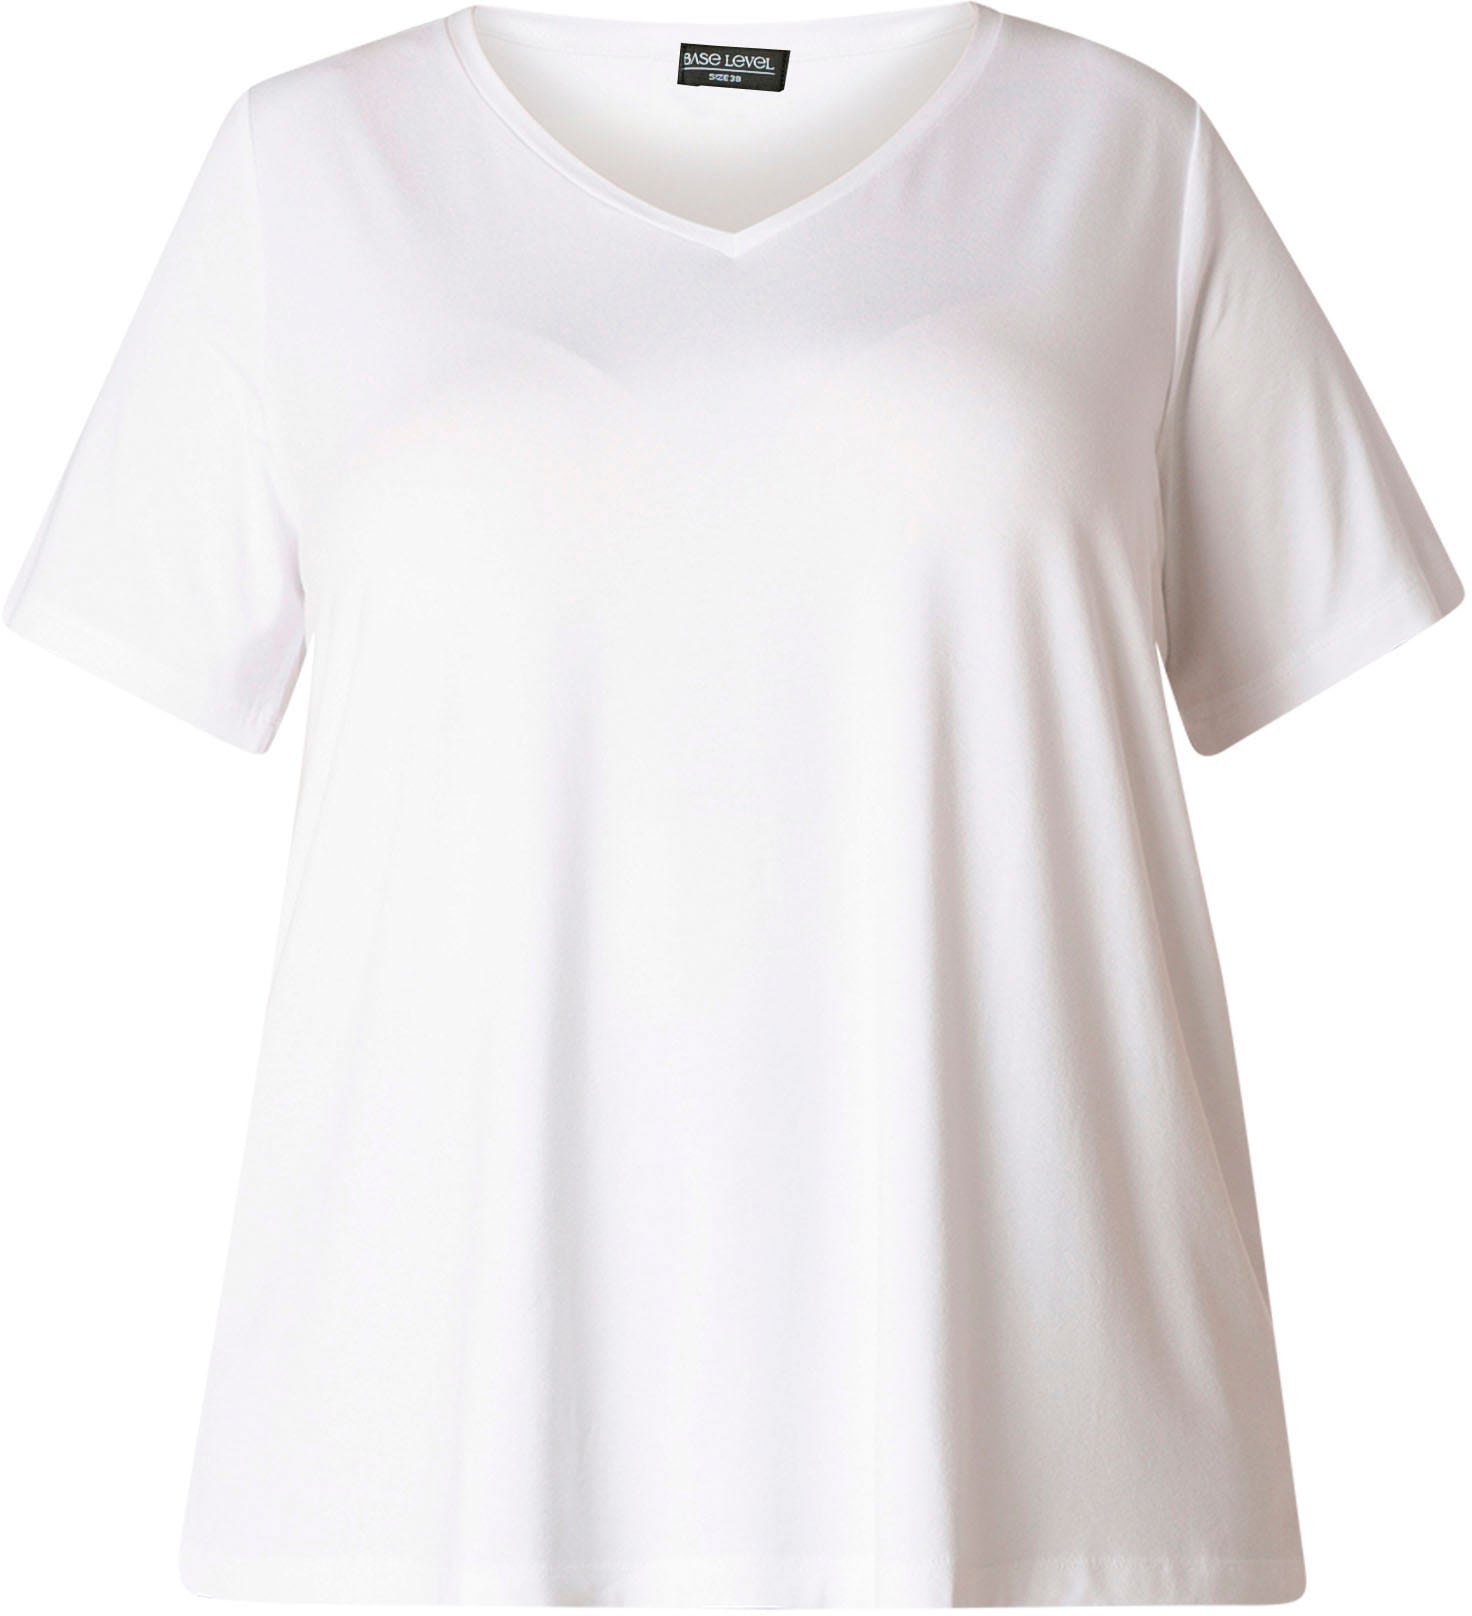 T-Shirt ♕ formstabile »Alba«, Curvy bei Base Weich Qualität fließende, Level